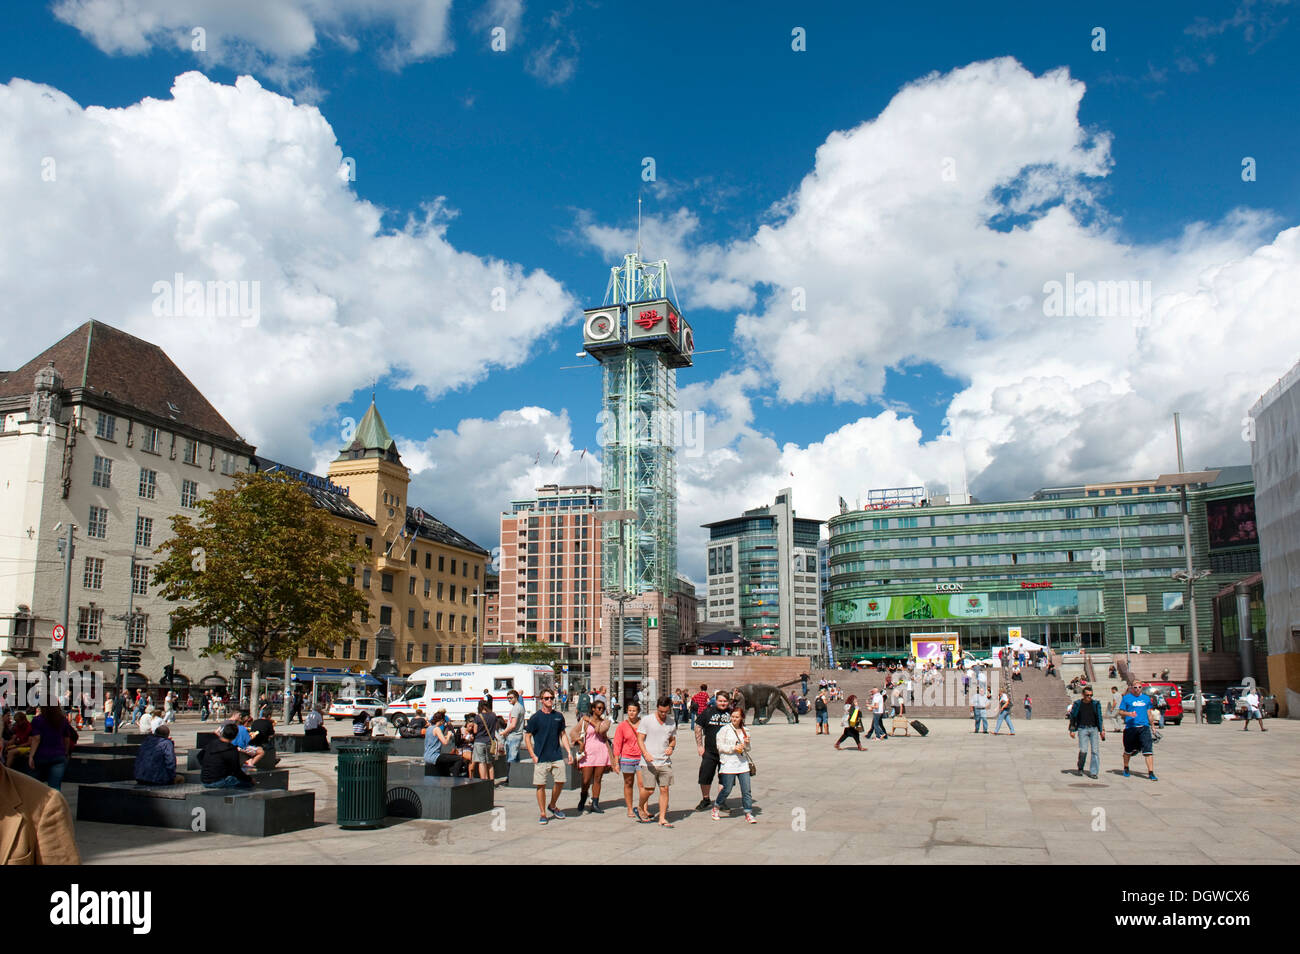 Plaza pública, zona peatonal, Trafikanten torre, transportación en la ciudad de Oslo, Noruega, Escandinavia, Europa del Norte Foto de stock